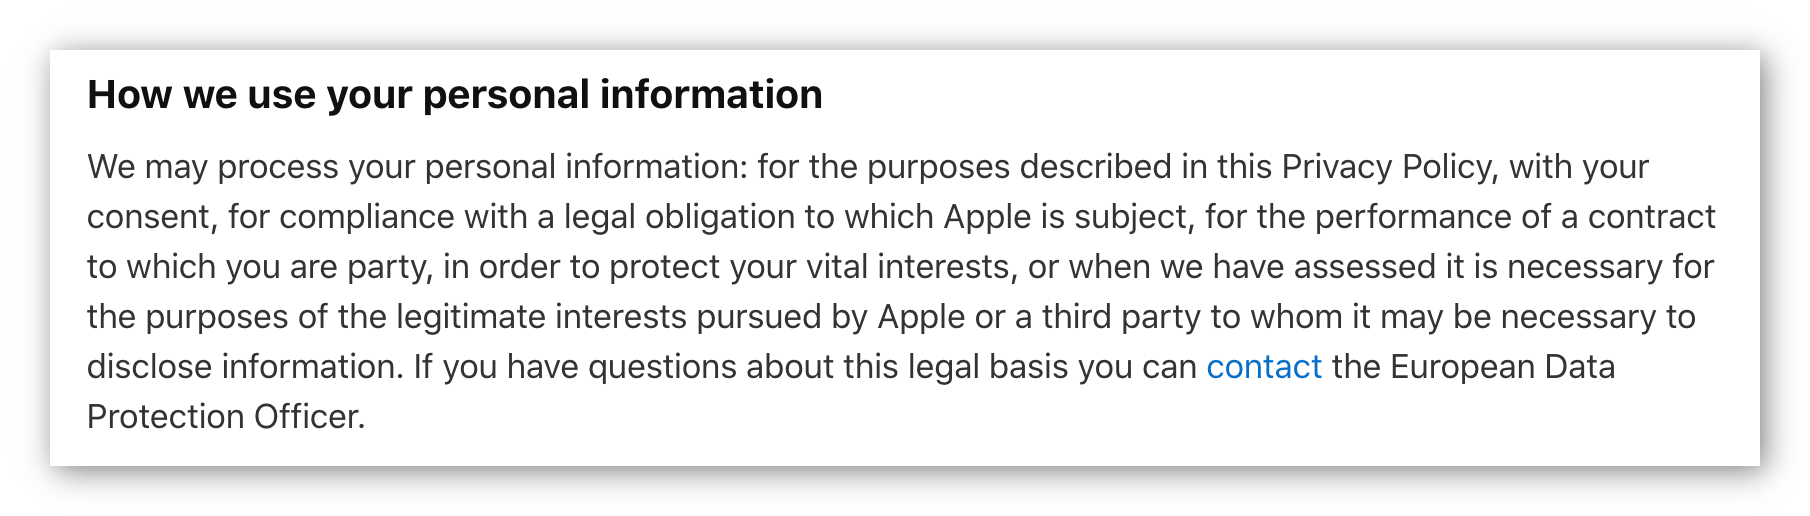 Captura de tela da política de privacidade da Apple